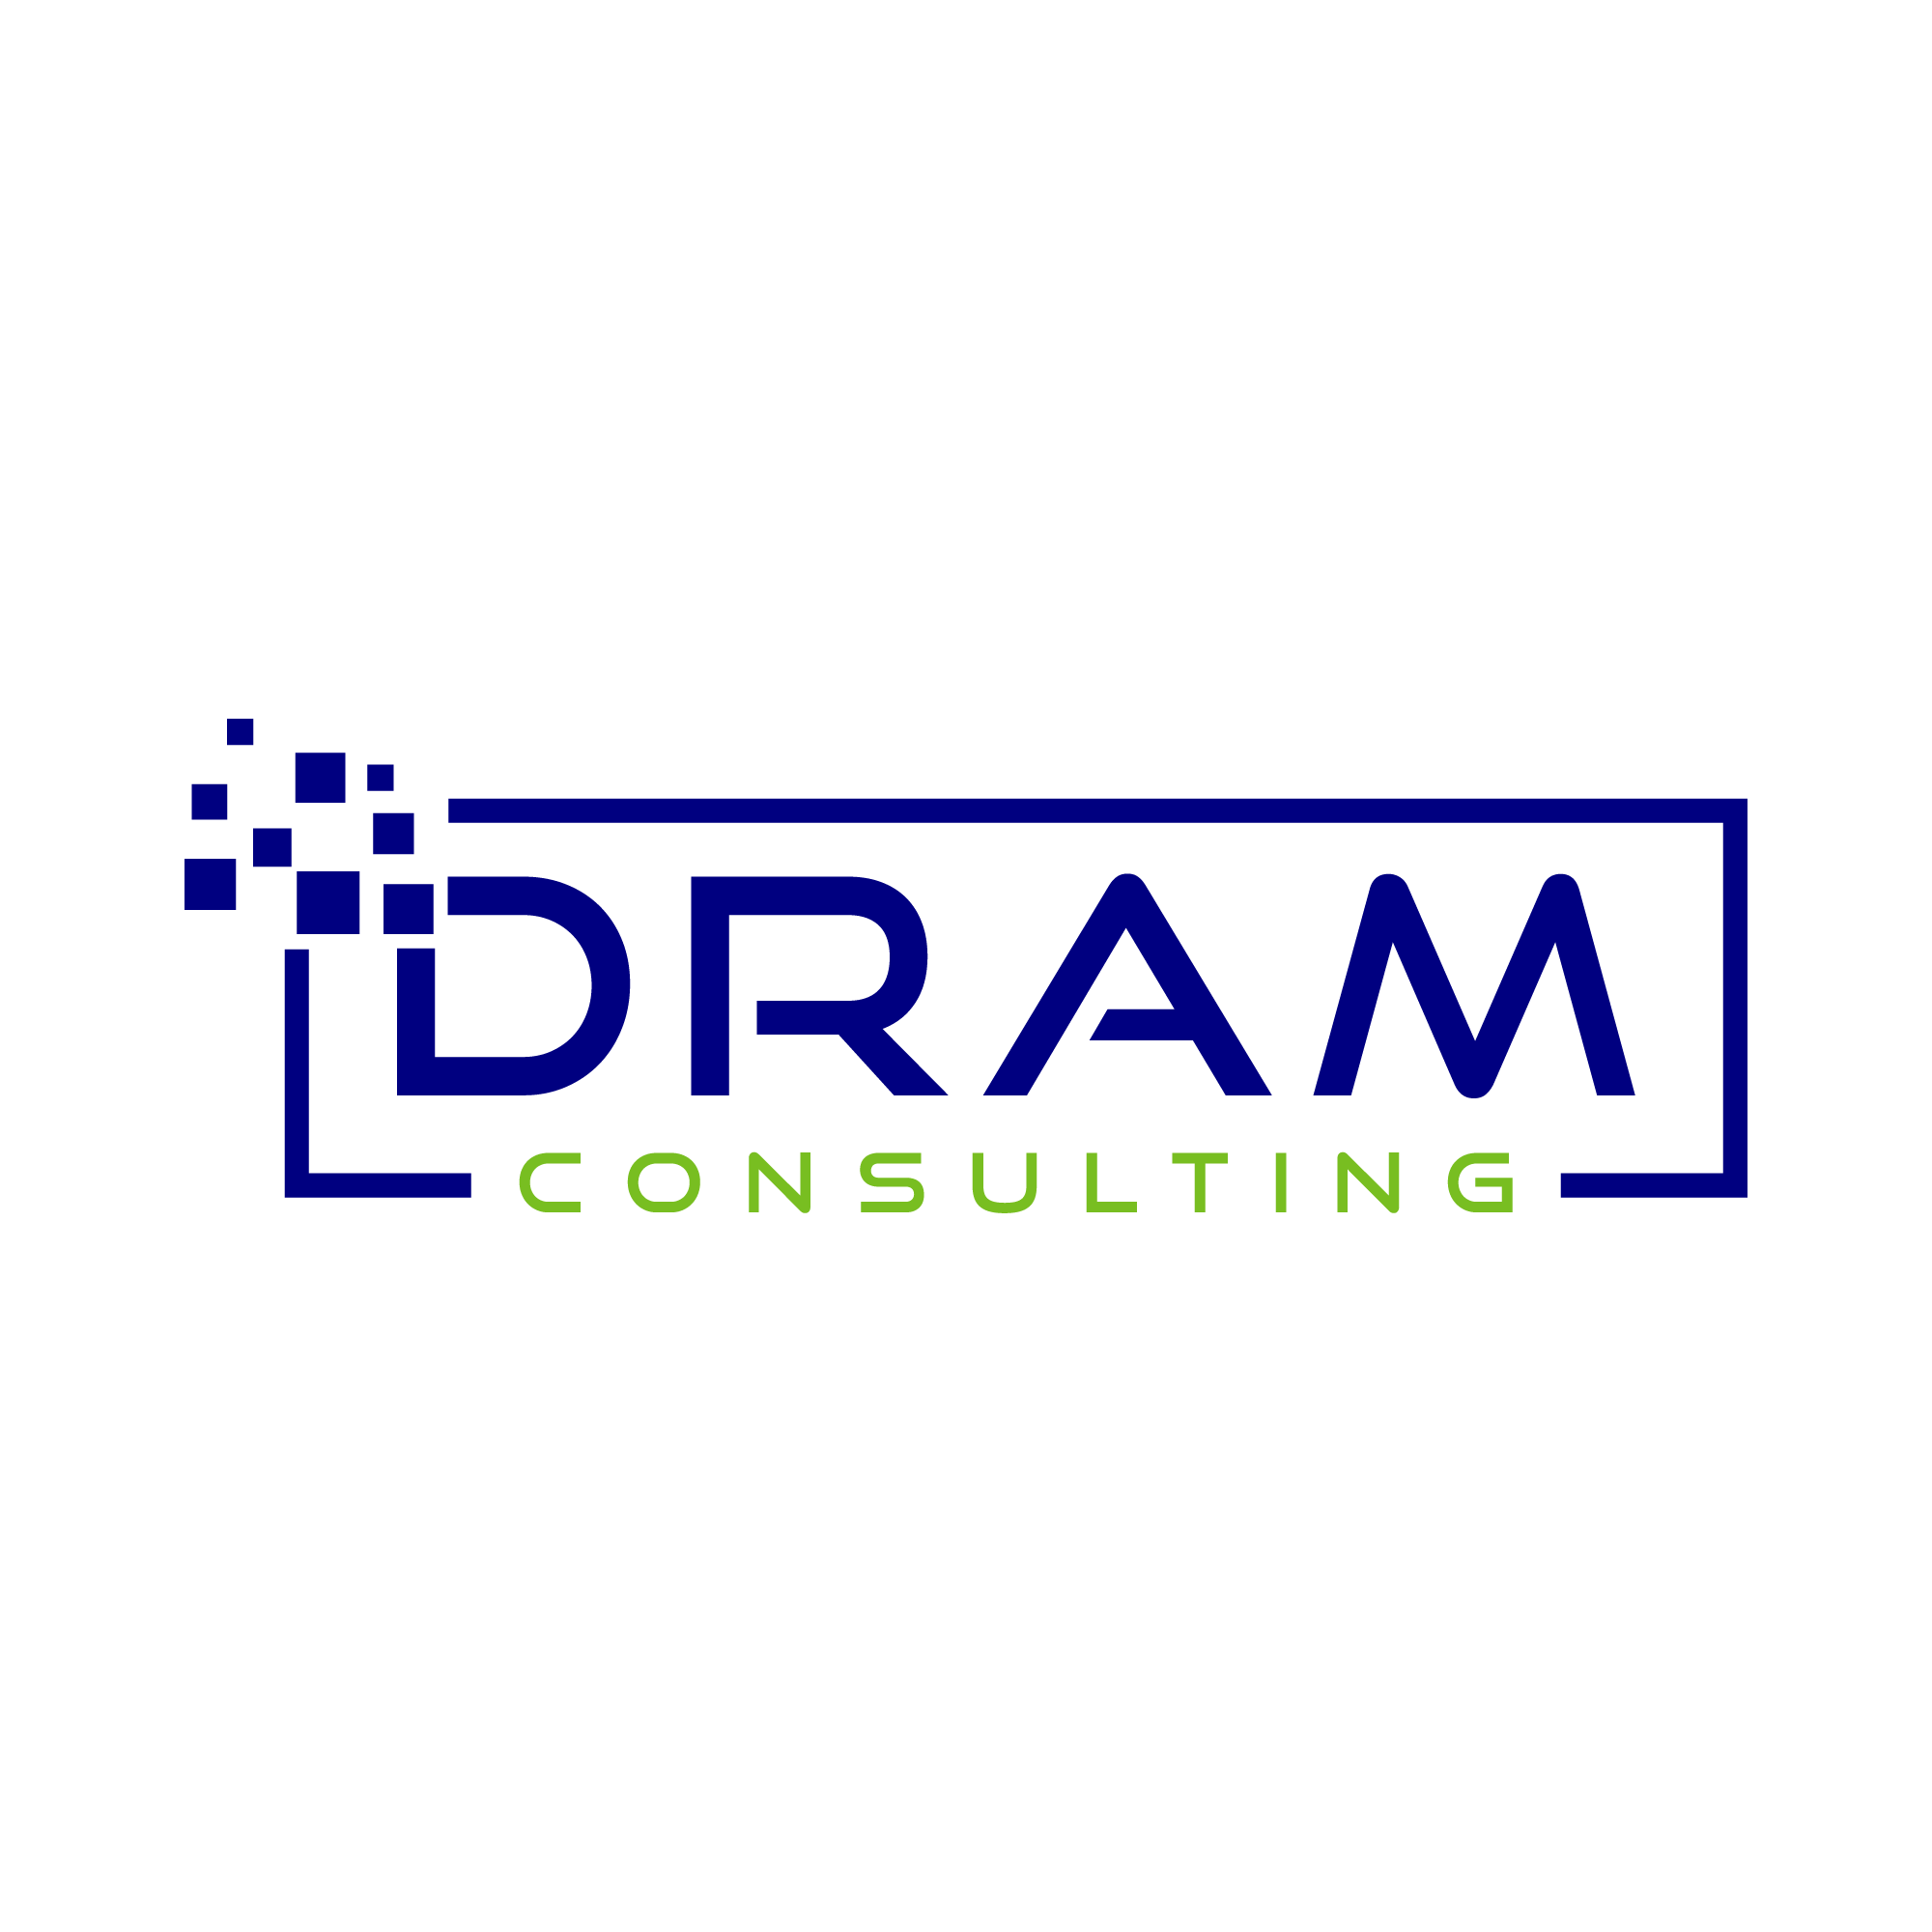 Dram Logo - DRAM Consulting Logo A(1)